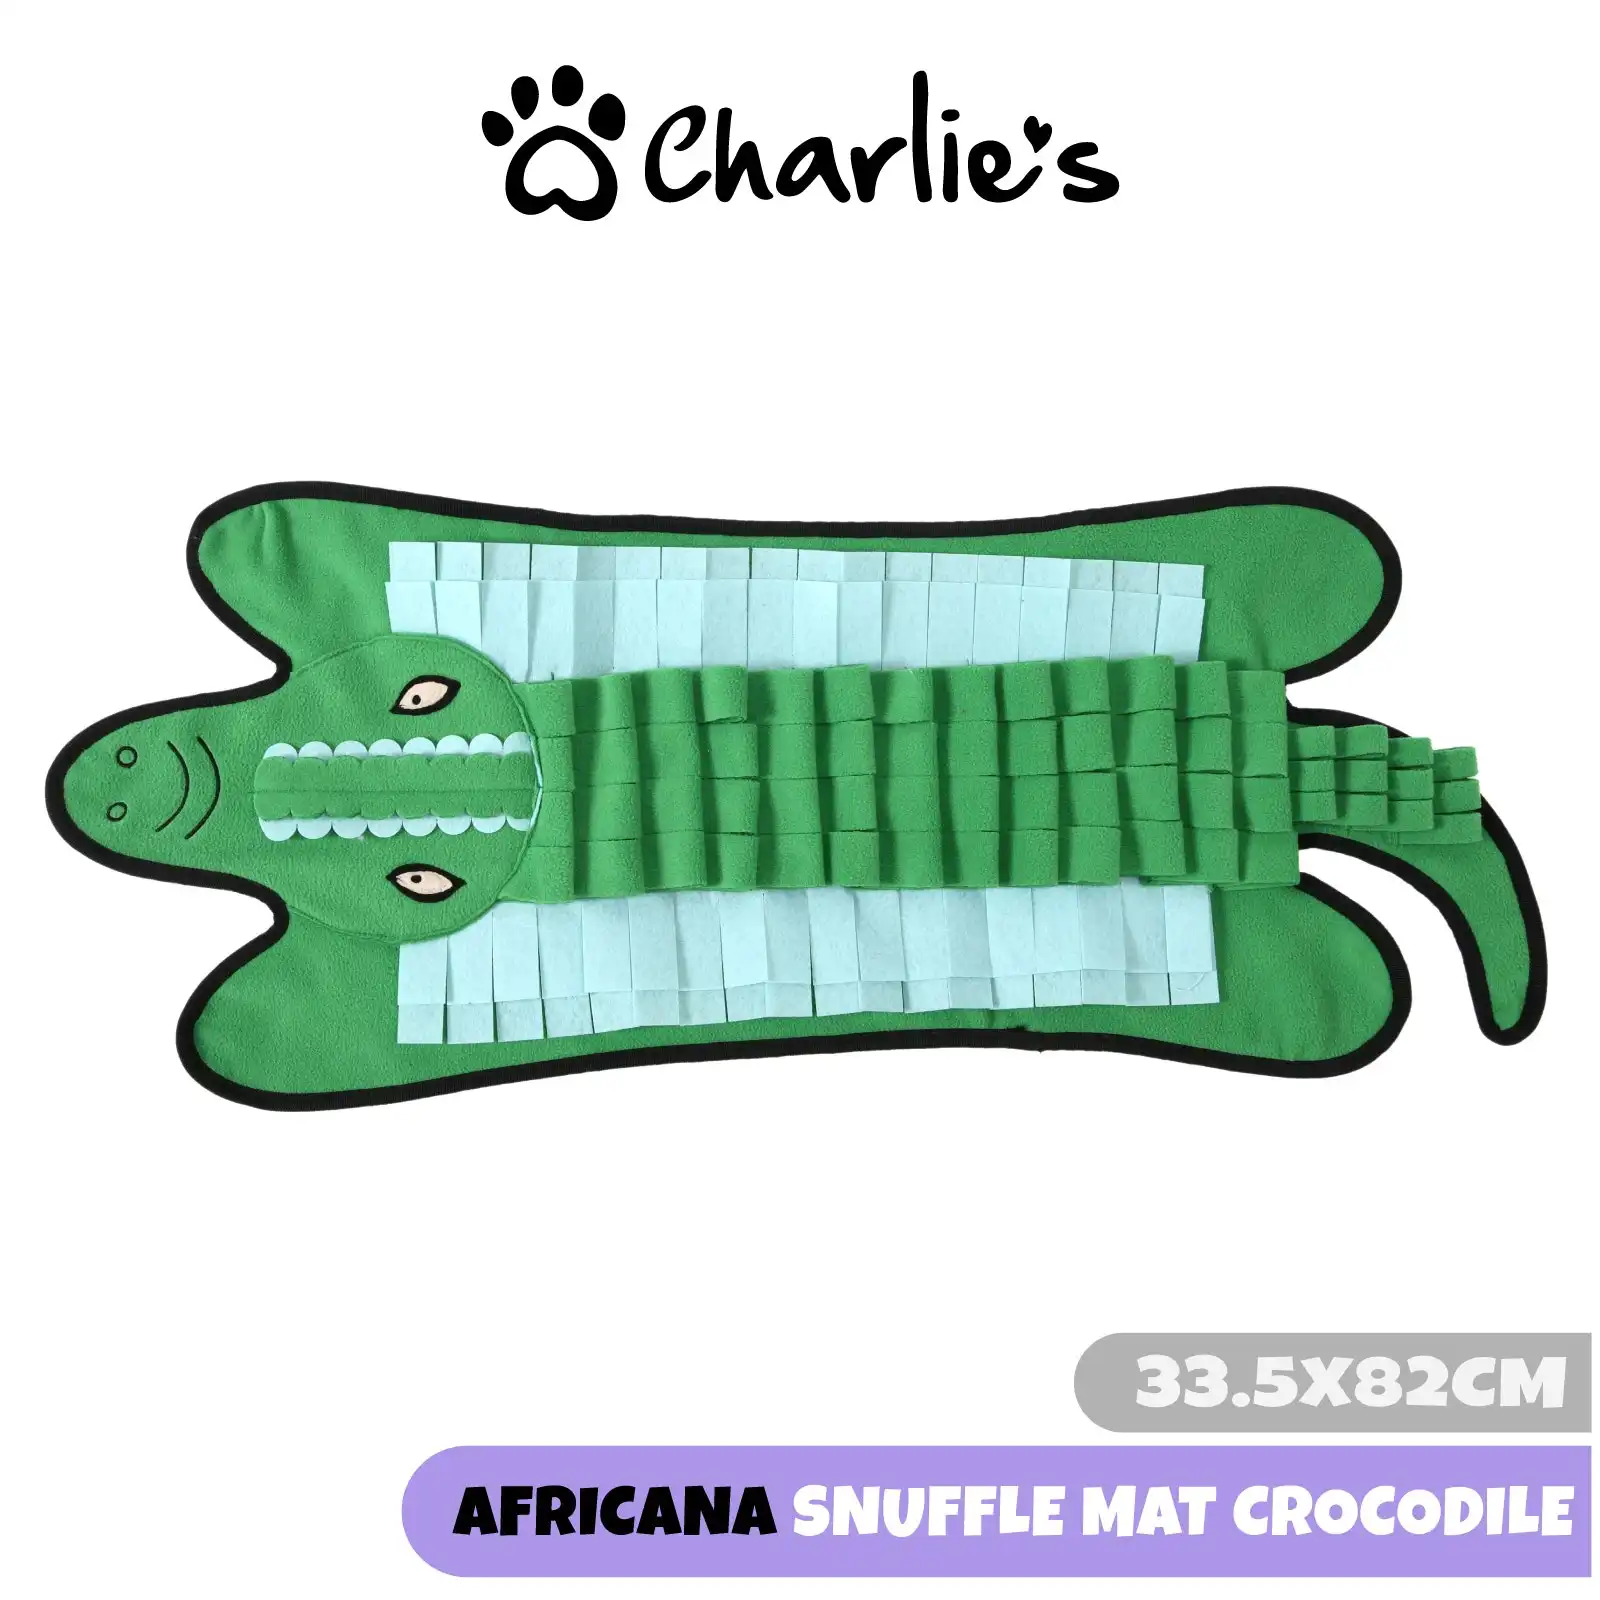 Charlie's Africana Snuffle Mat Crocodile 33.5x82cm